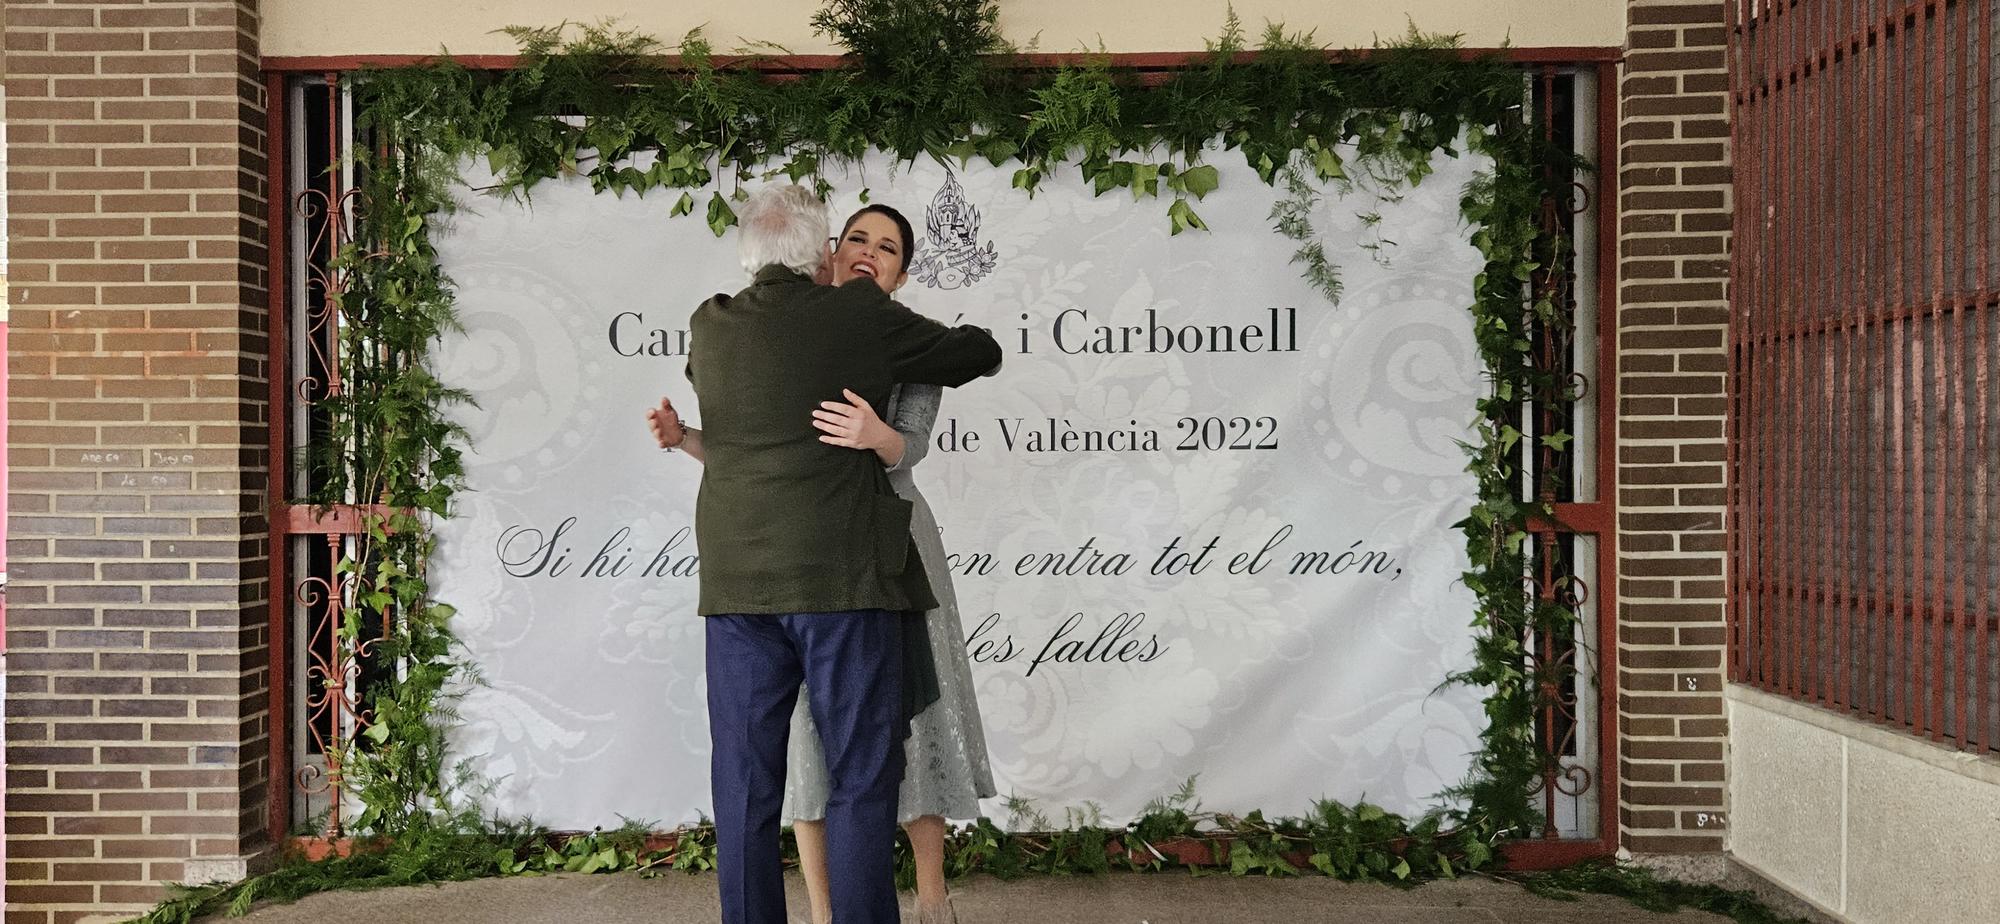 Honores de fallera mayor para Carmen Martín Carbonell